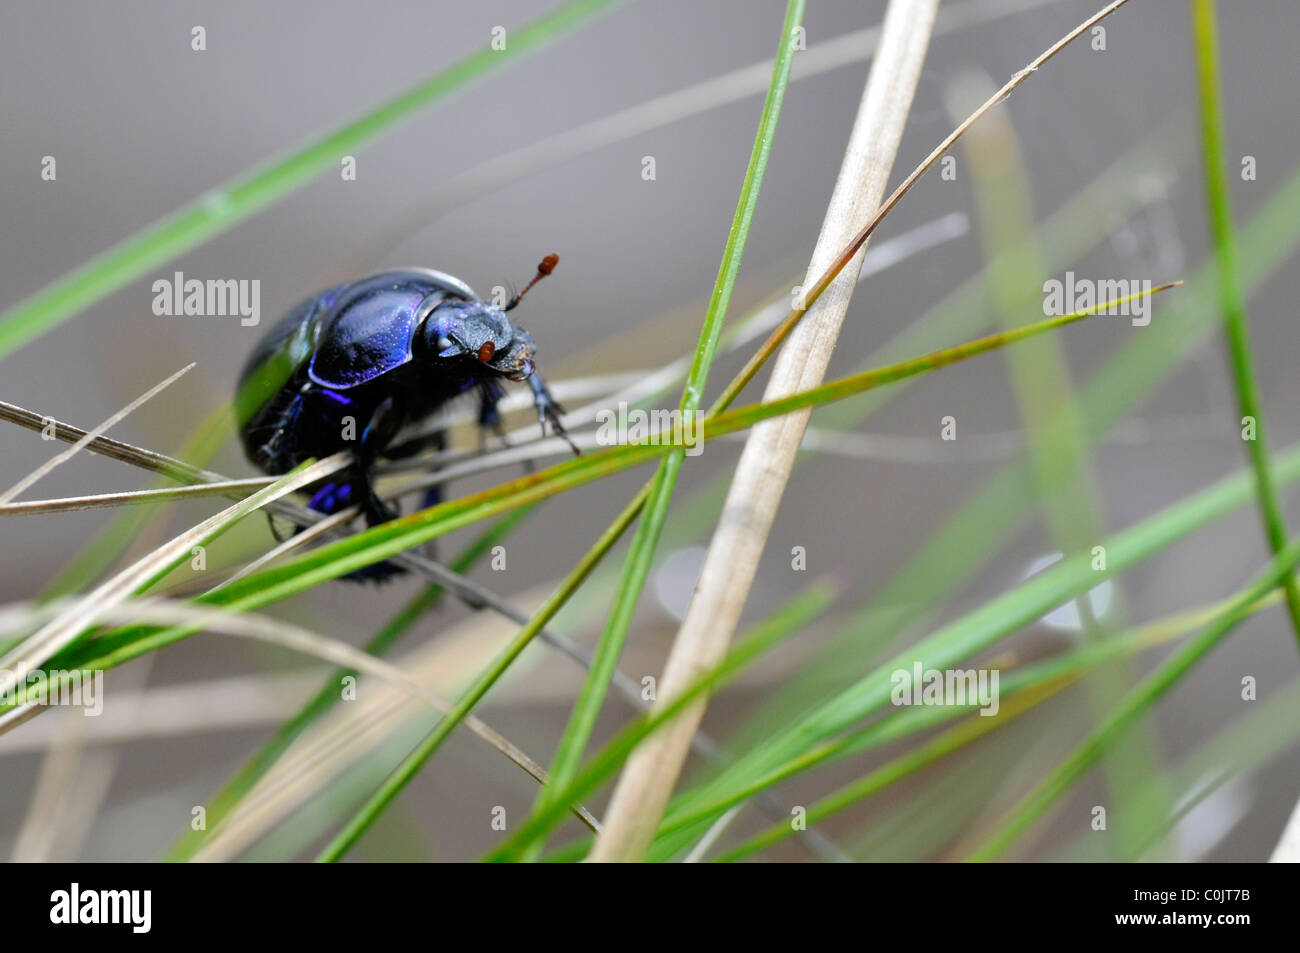 Nahaufnahme des Käfers Geotrupidae Gattung auf dem Gras Stockfoto